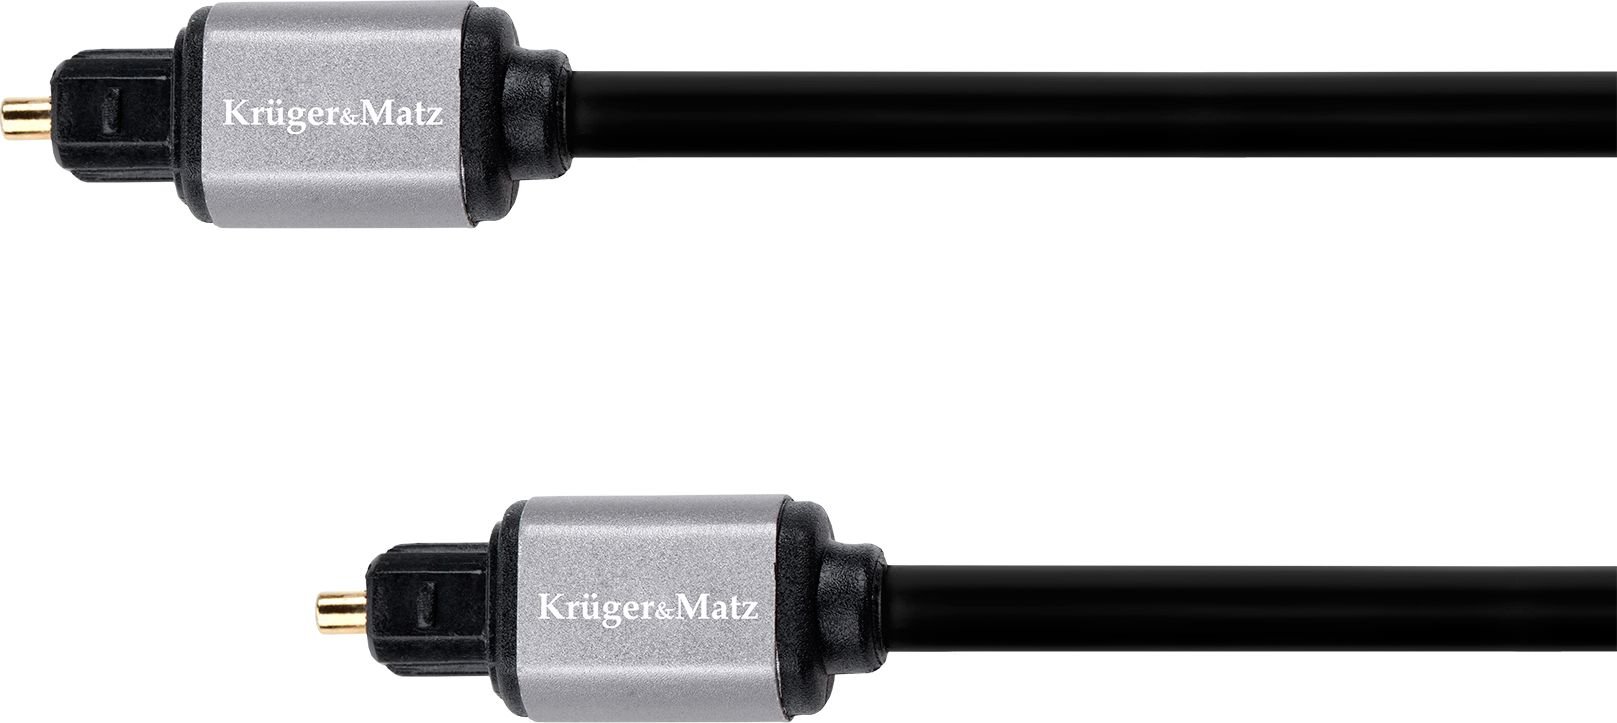 Cablu optic 5 m Kruger&Matz Basic